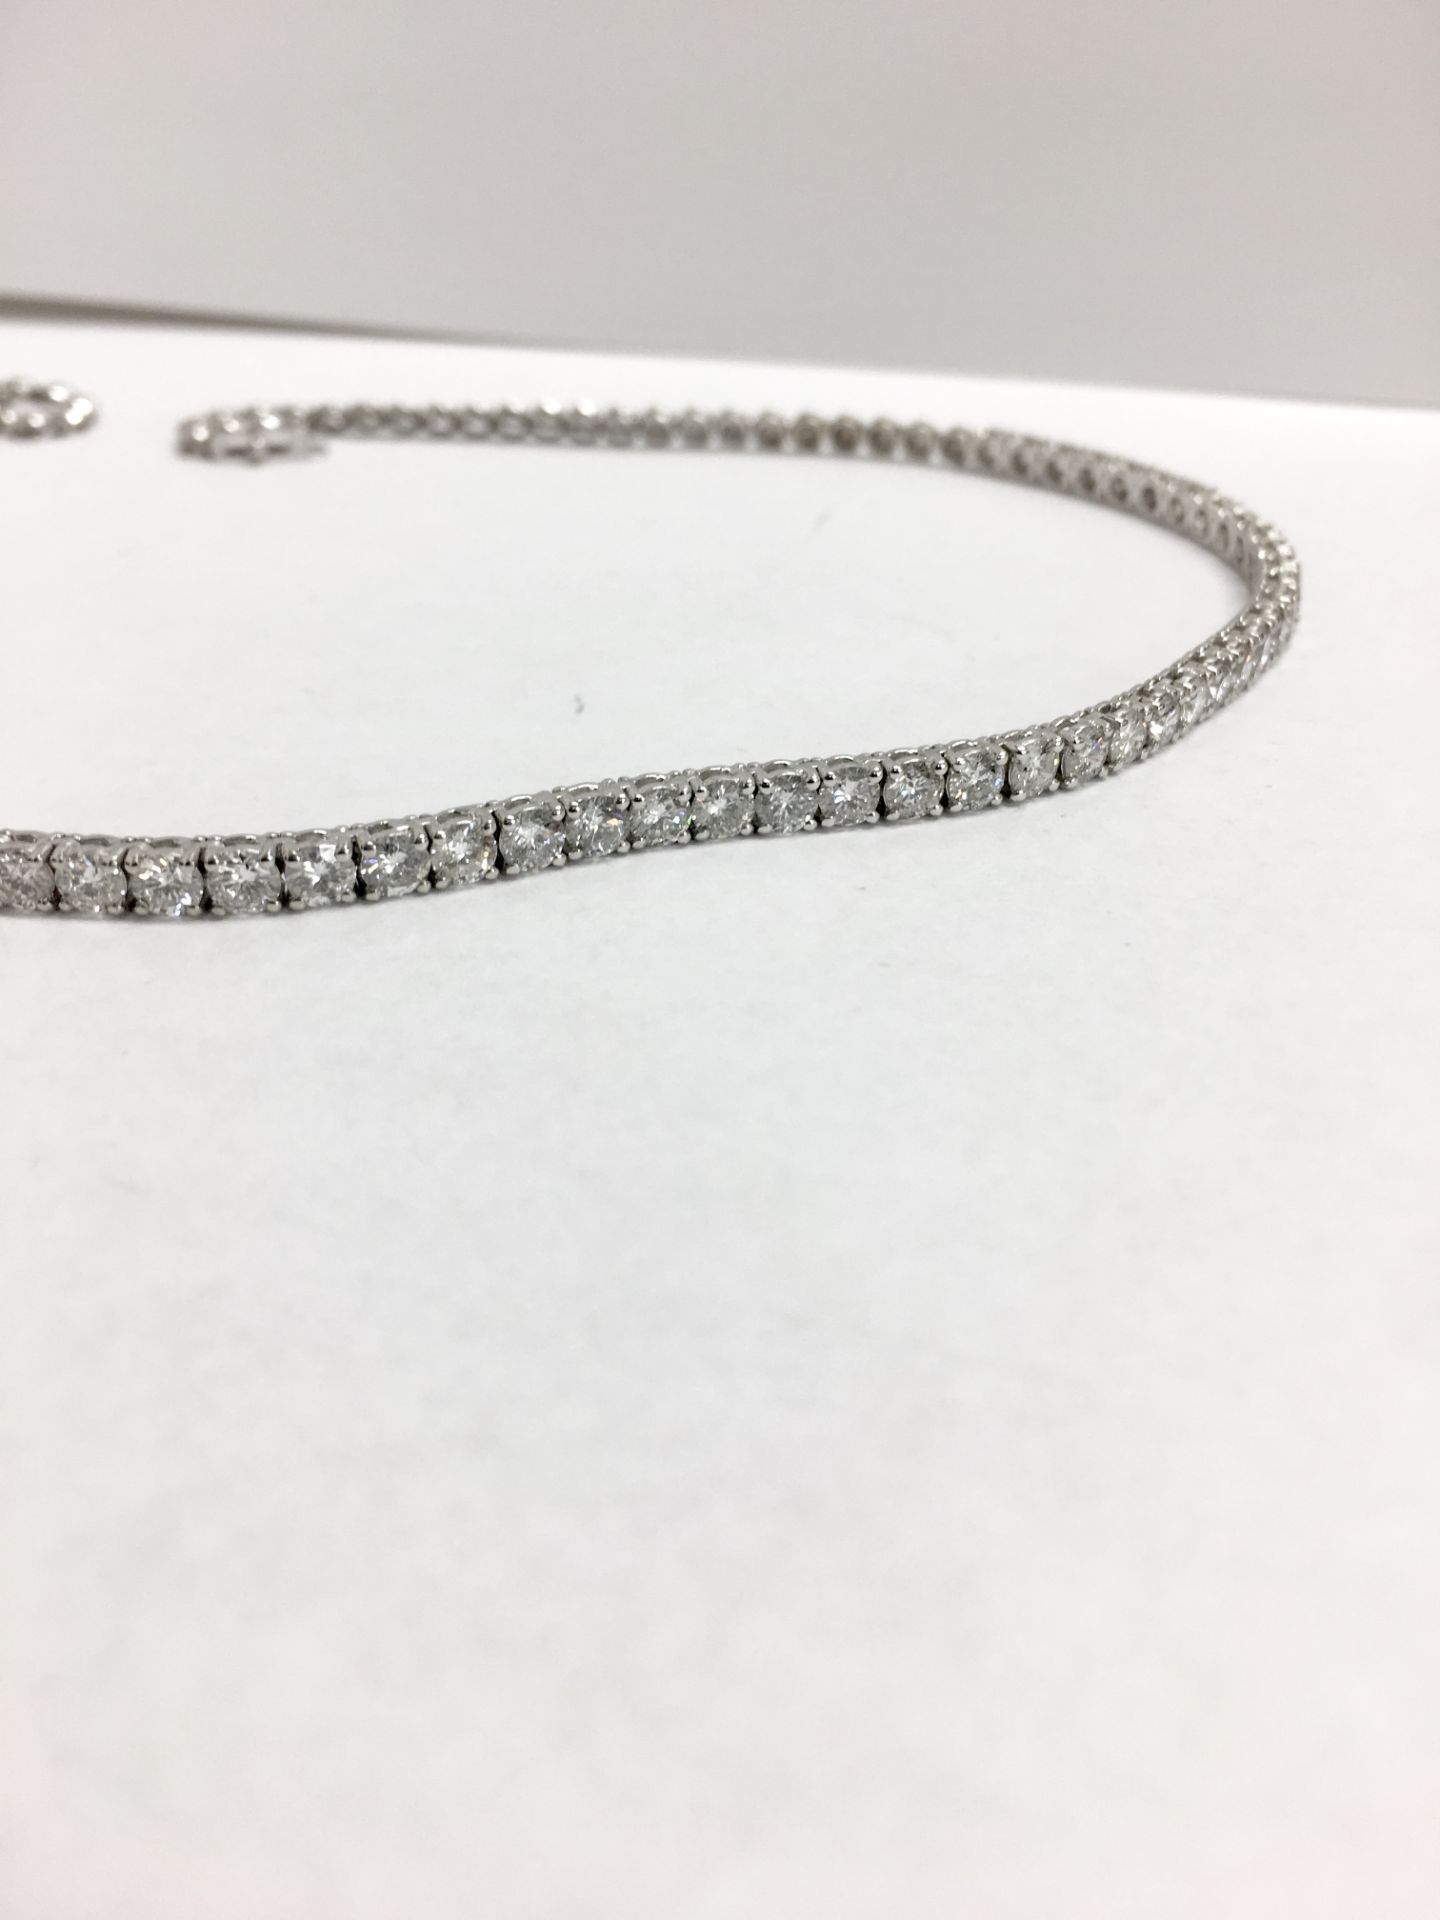 9.80ct 18ct white gold diamond necklace ,9.80ct h colour si grade diamonds,21.3gms 18ct white - Image 4 of 10